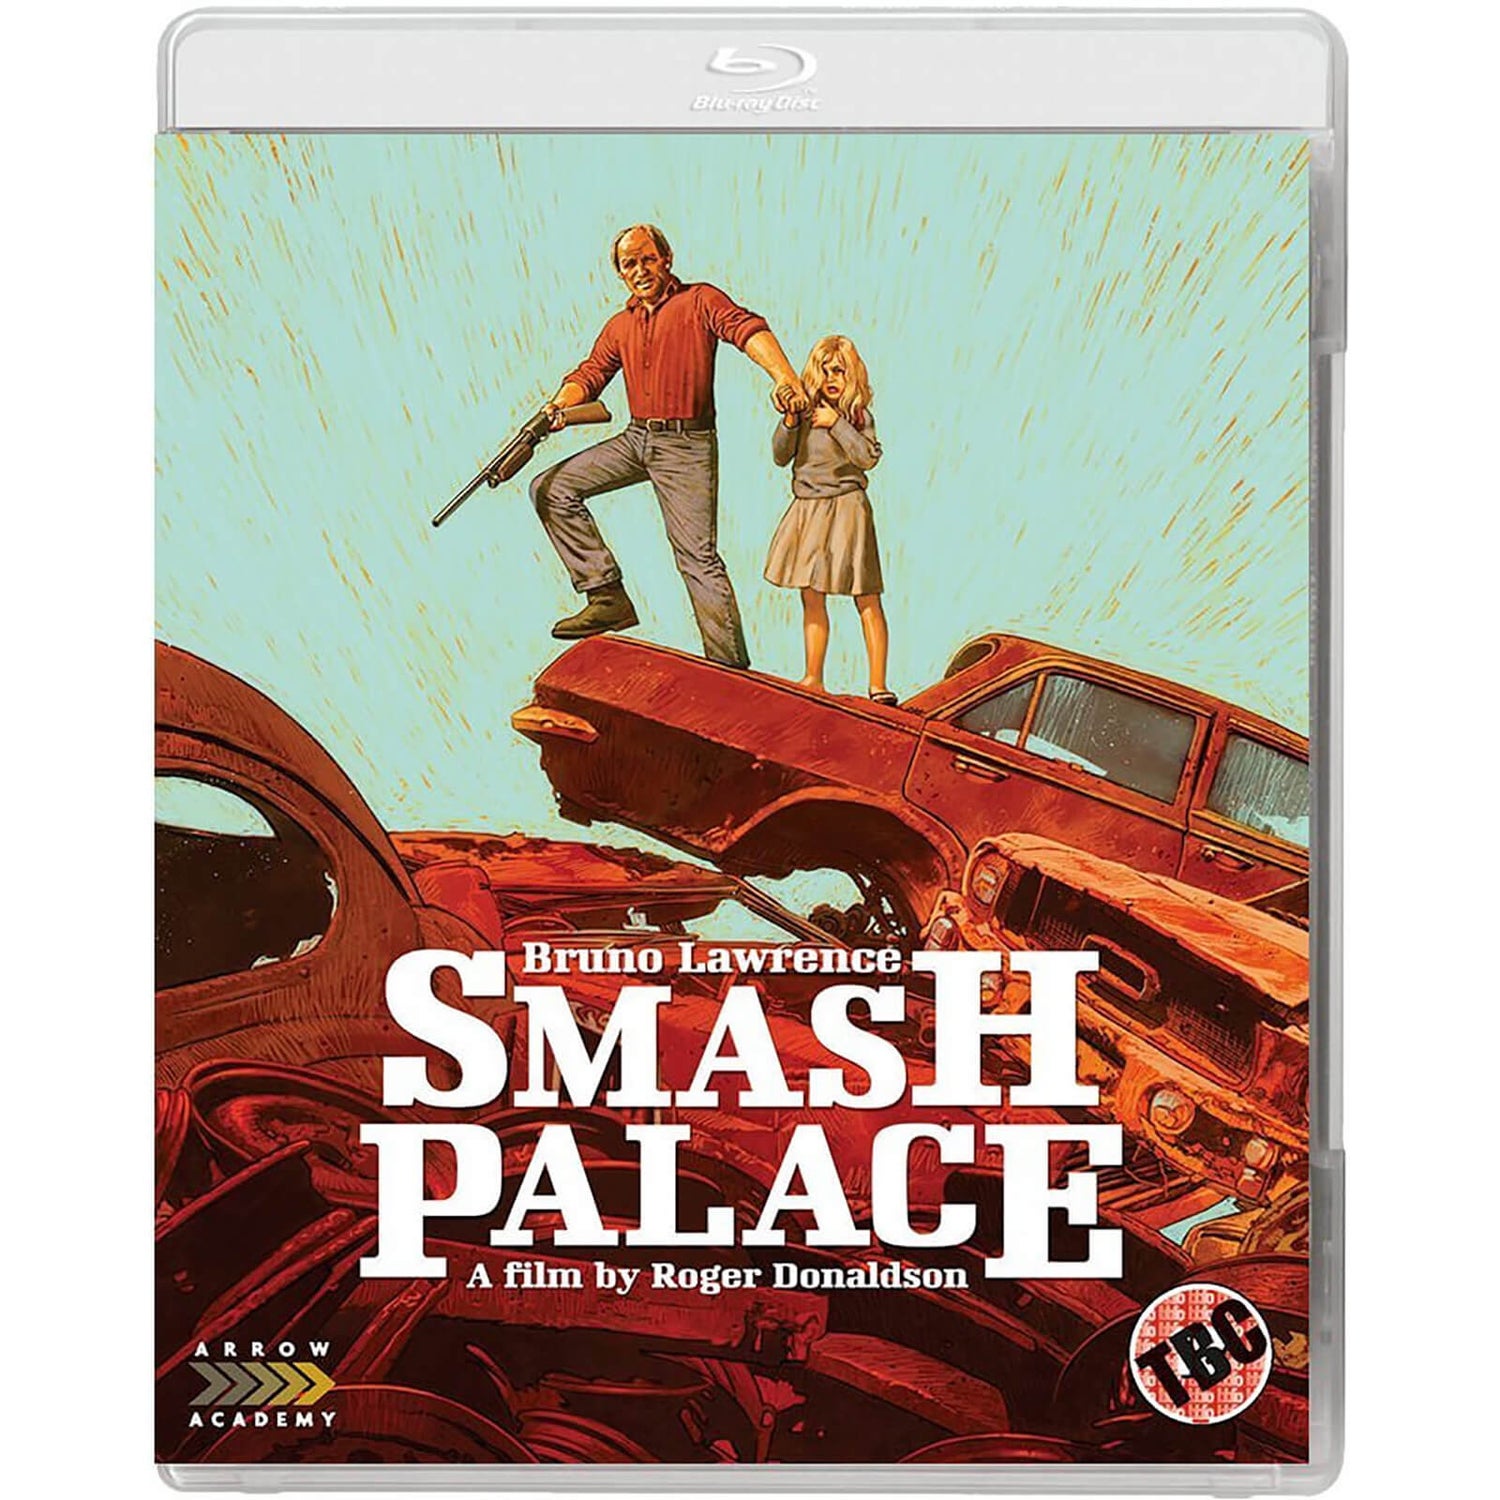 Smash Palace Blu-ray